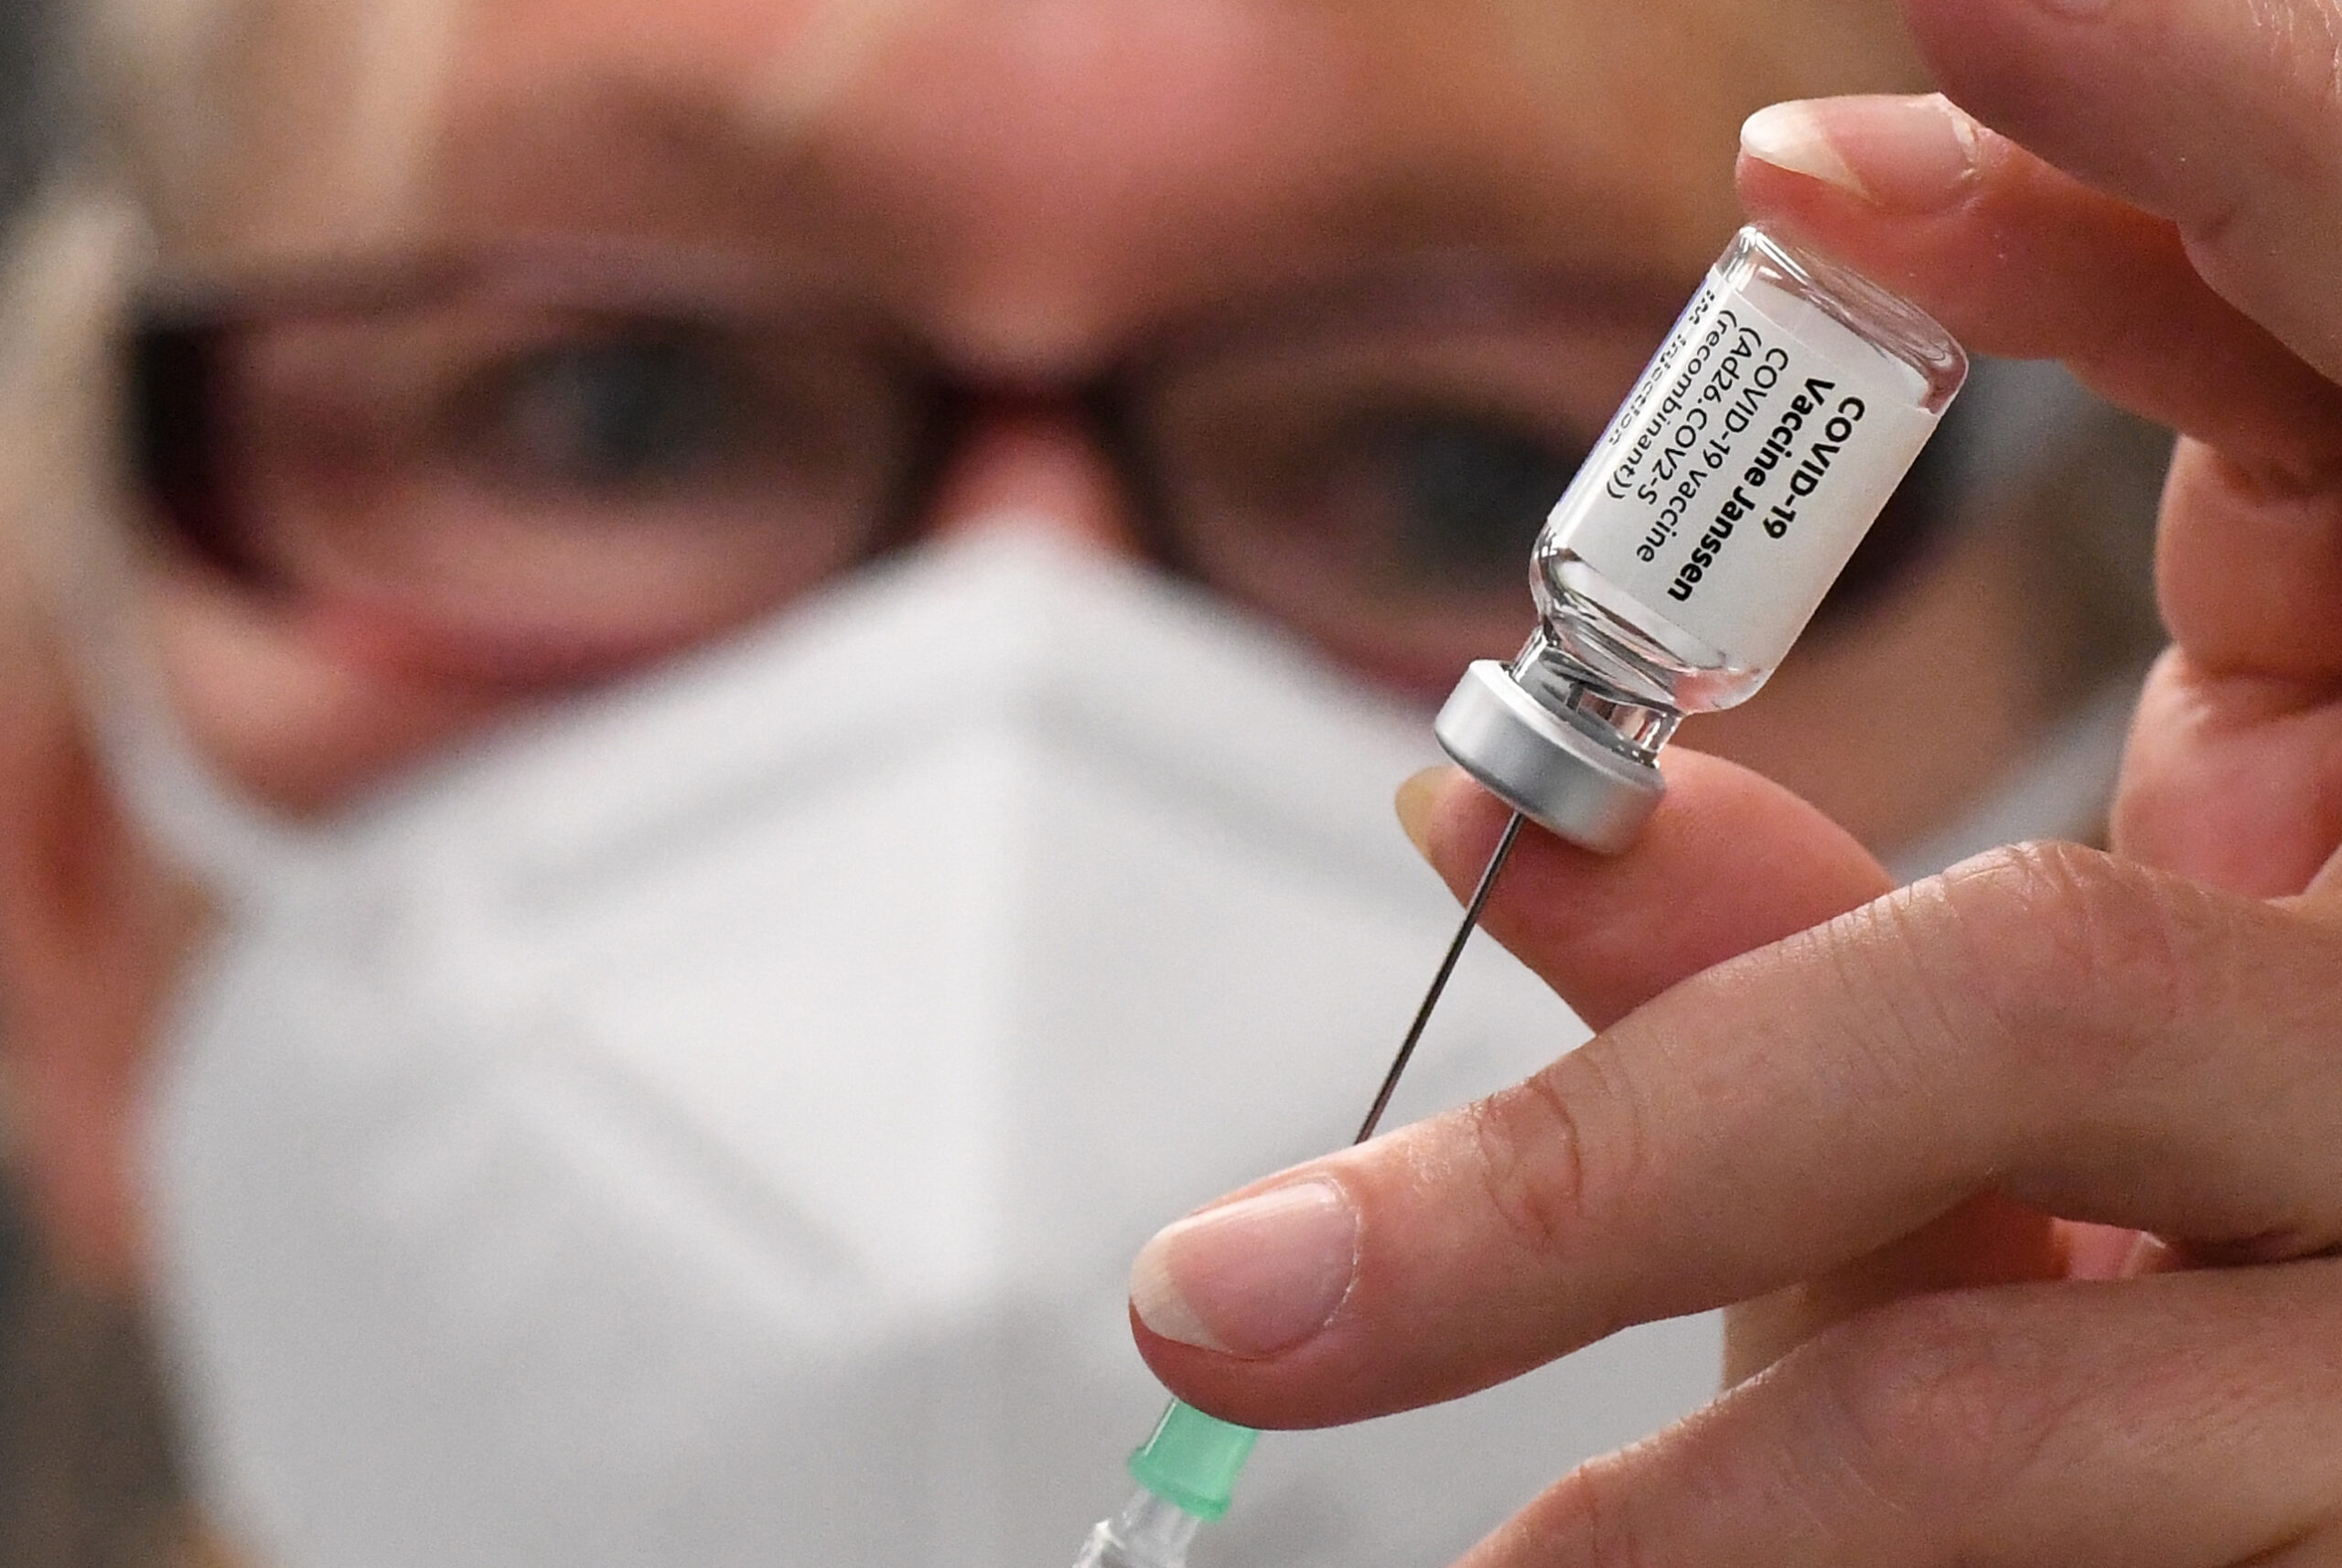 “จอห์นสัน แอนด์ จอห์นสัน” เผย วัคซีนเข็ม 2 มีประสิทธิภาพ 94% – ต่างประเทศ